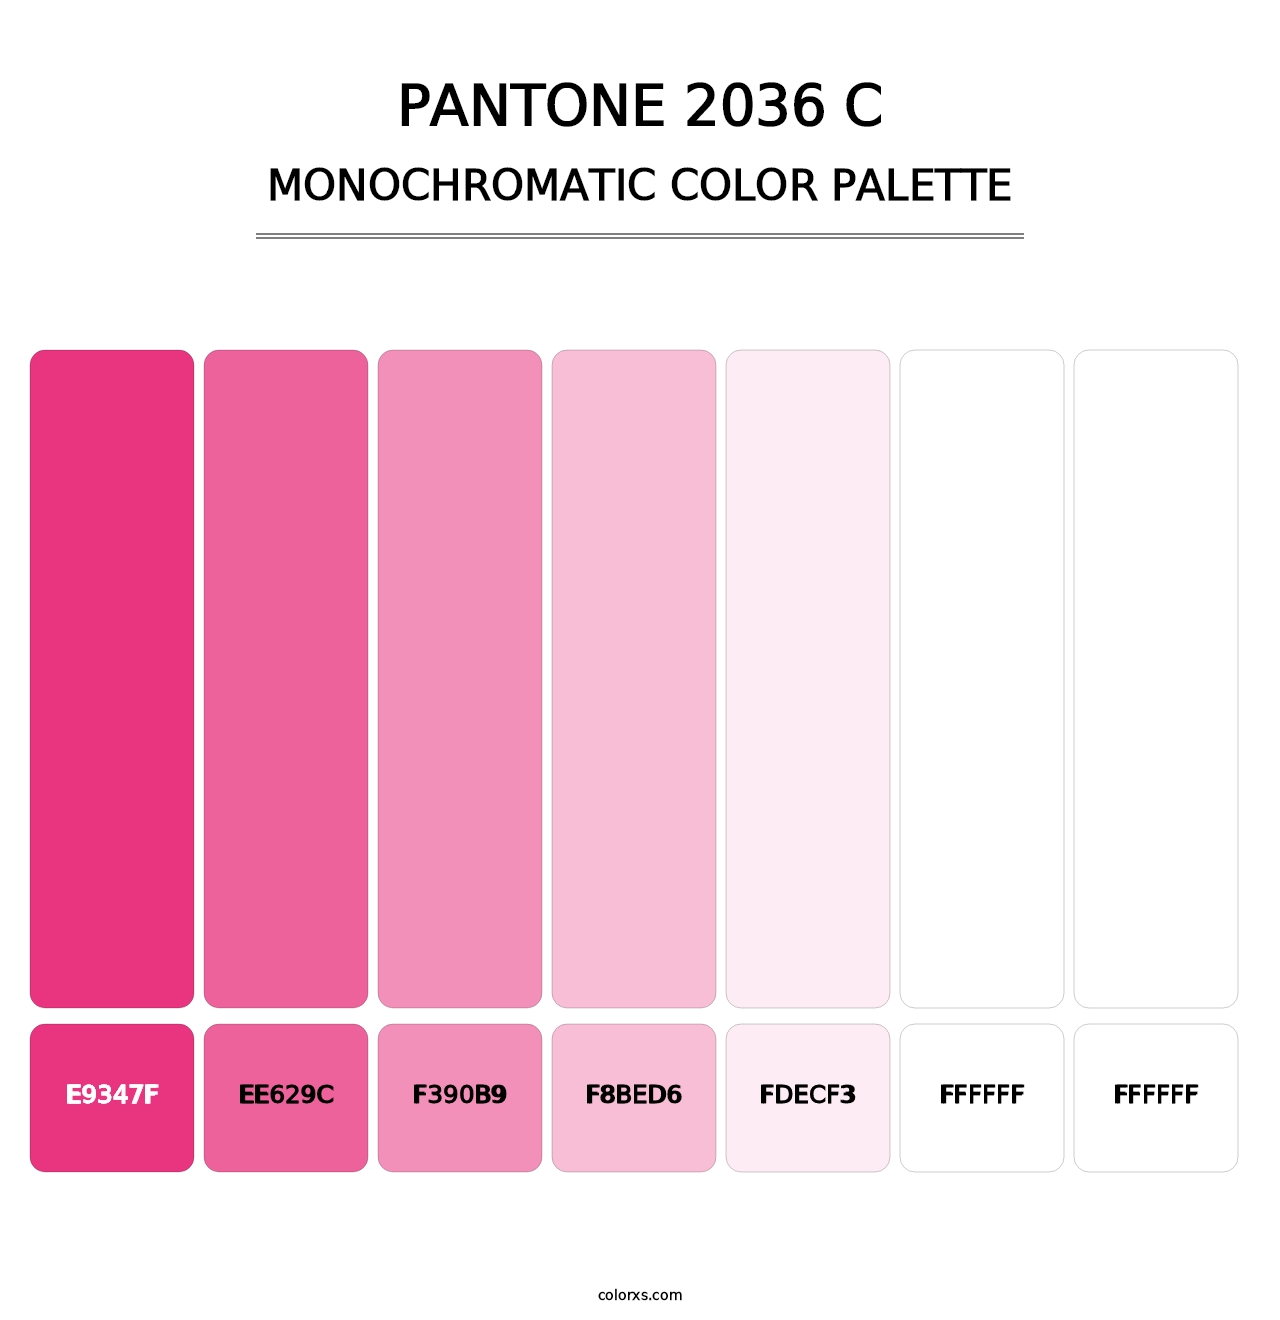 PANTONE 2036 C - Monochromatic Color Palette